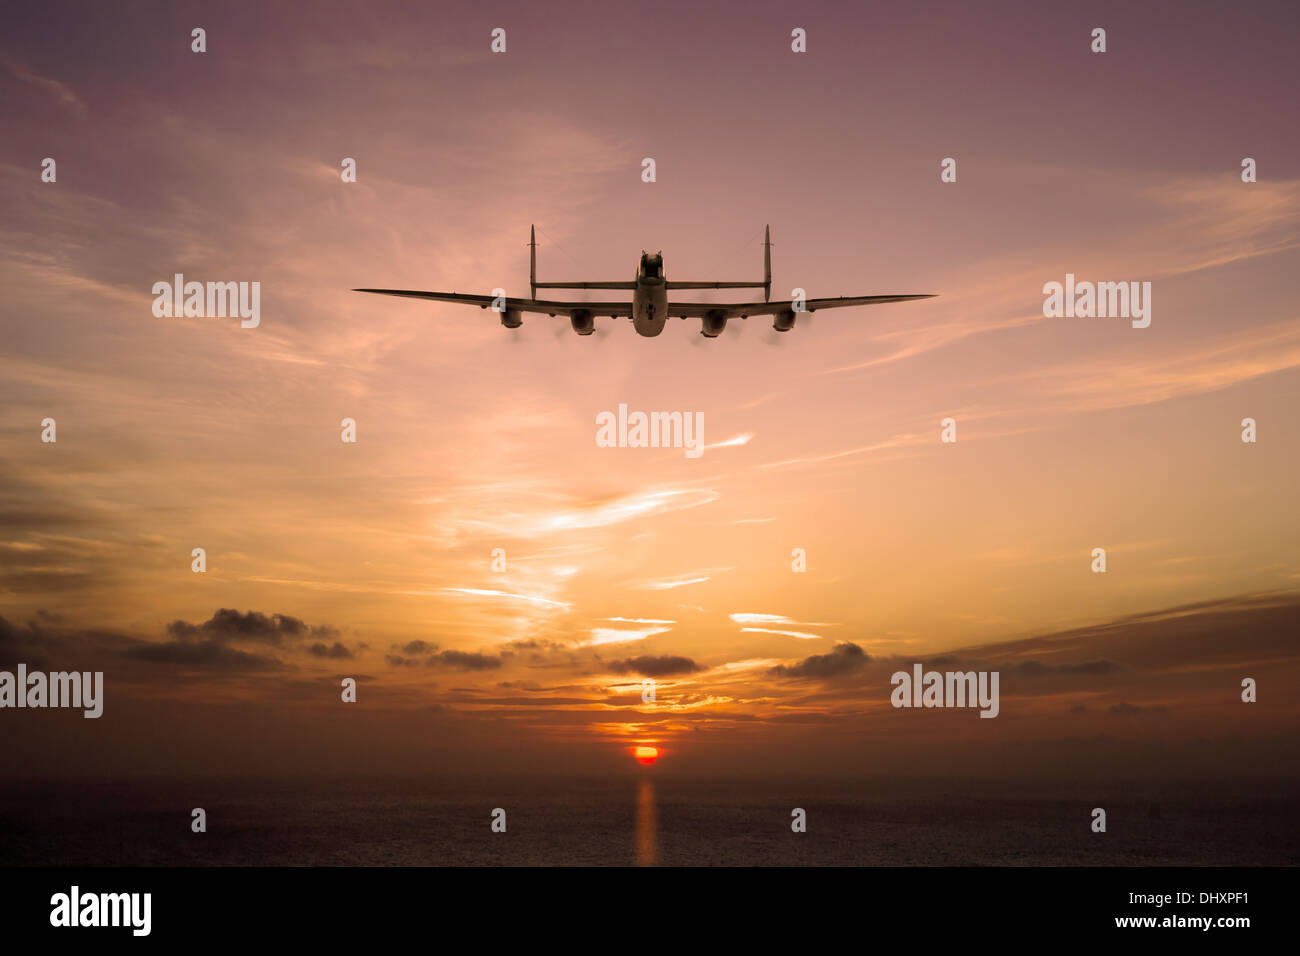 Un Avro Lancaster solitaire entre dans le soleil bas. Une autre longue nuit s'achève ou commence la journée. Banque D'Images